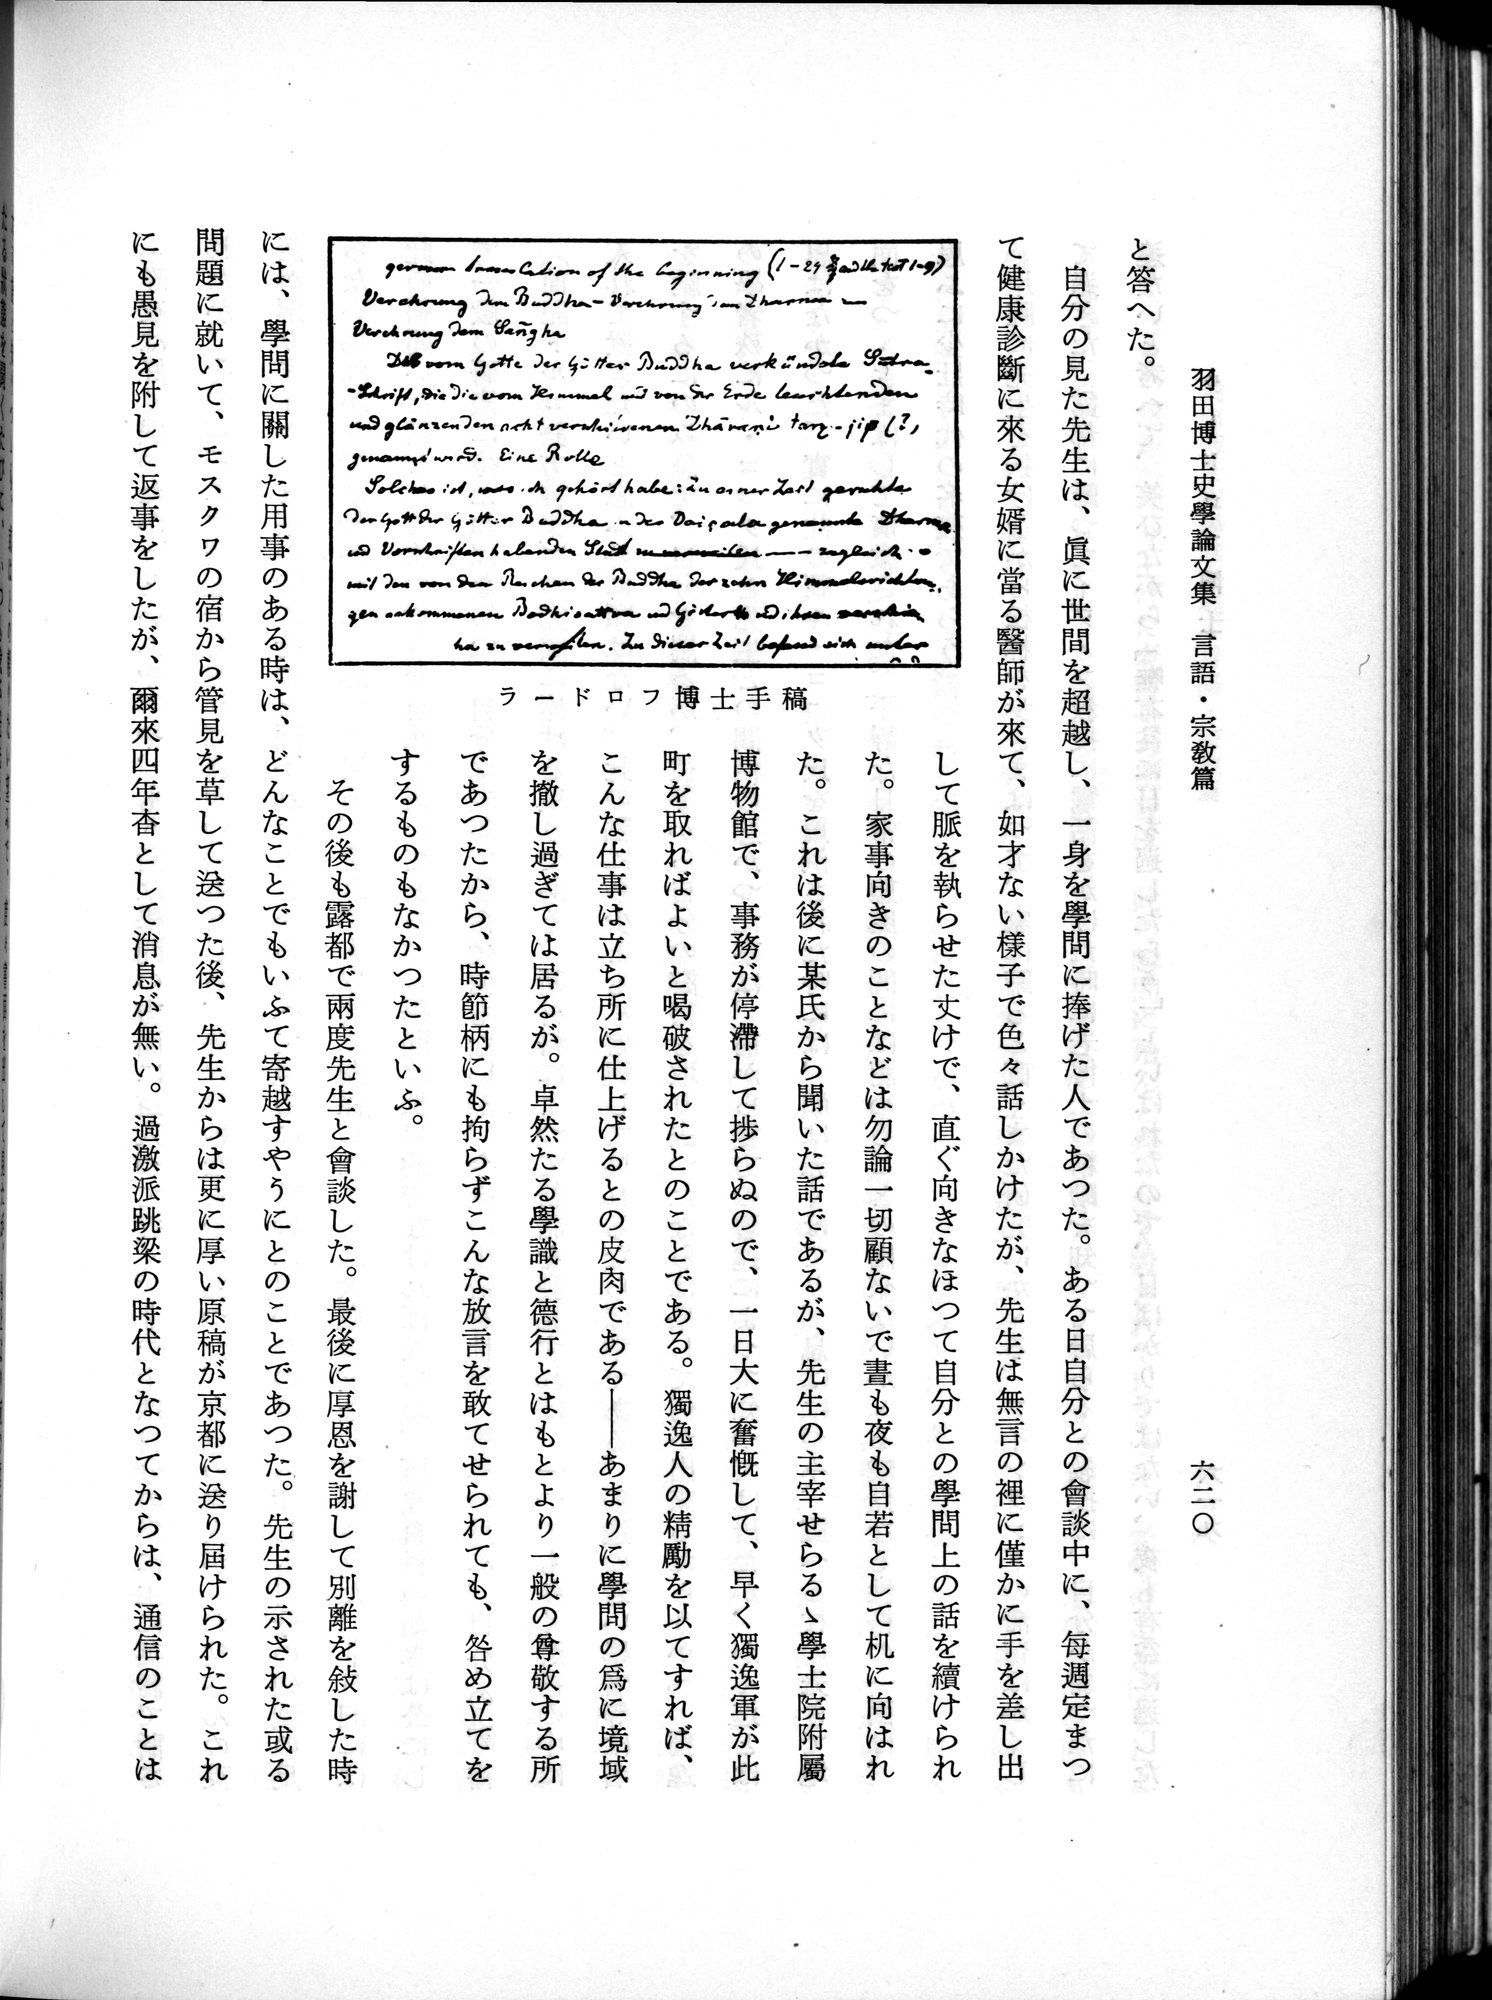 羽田博士史学論文集 : vol.2 / 684 ページ（白黒高解像度画像）